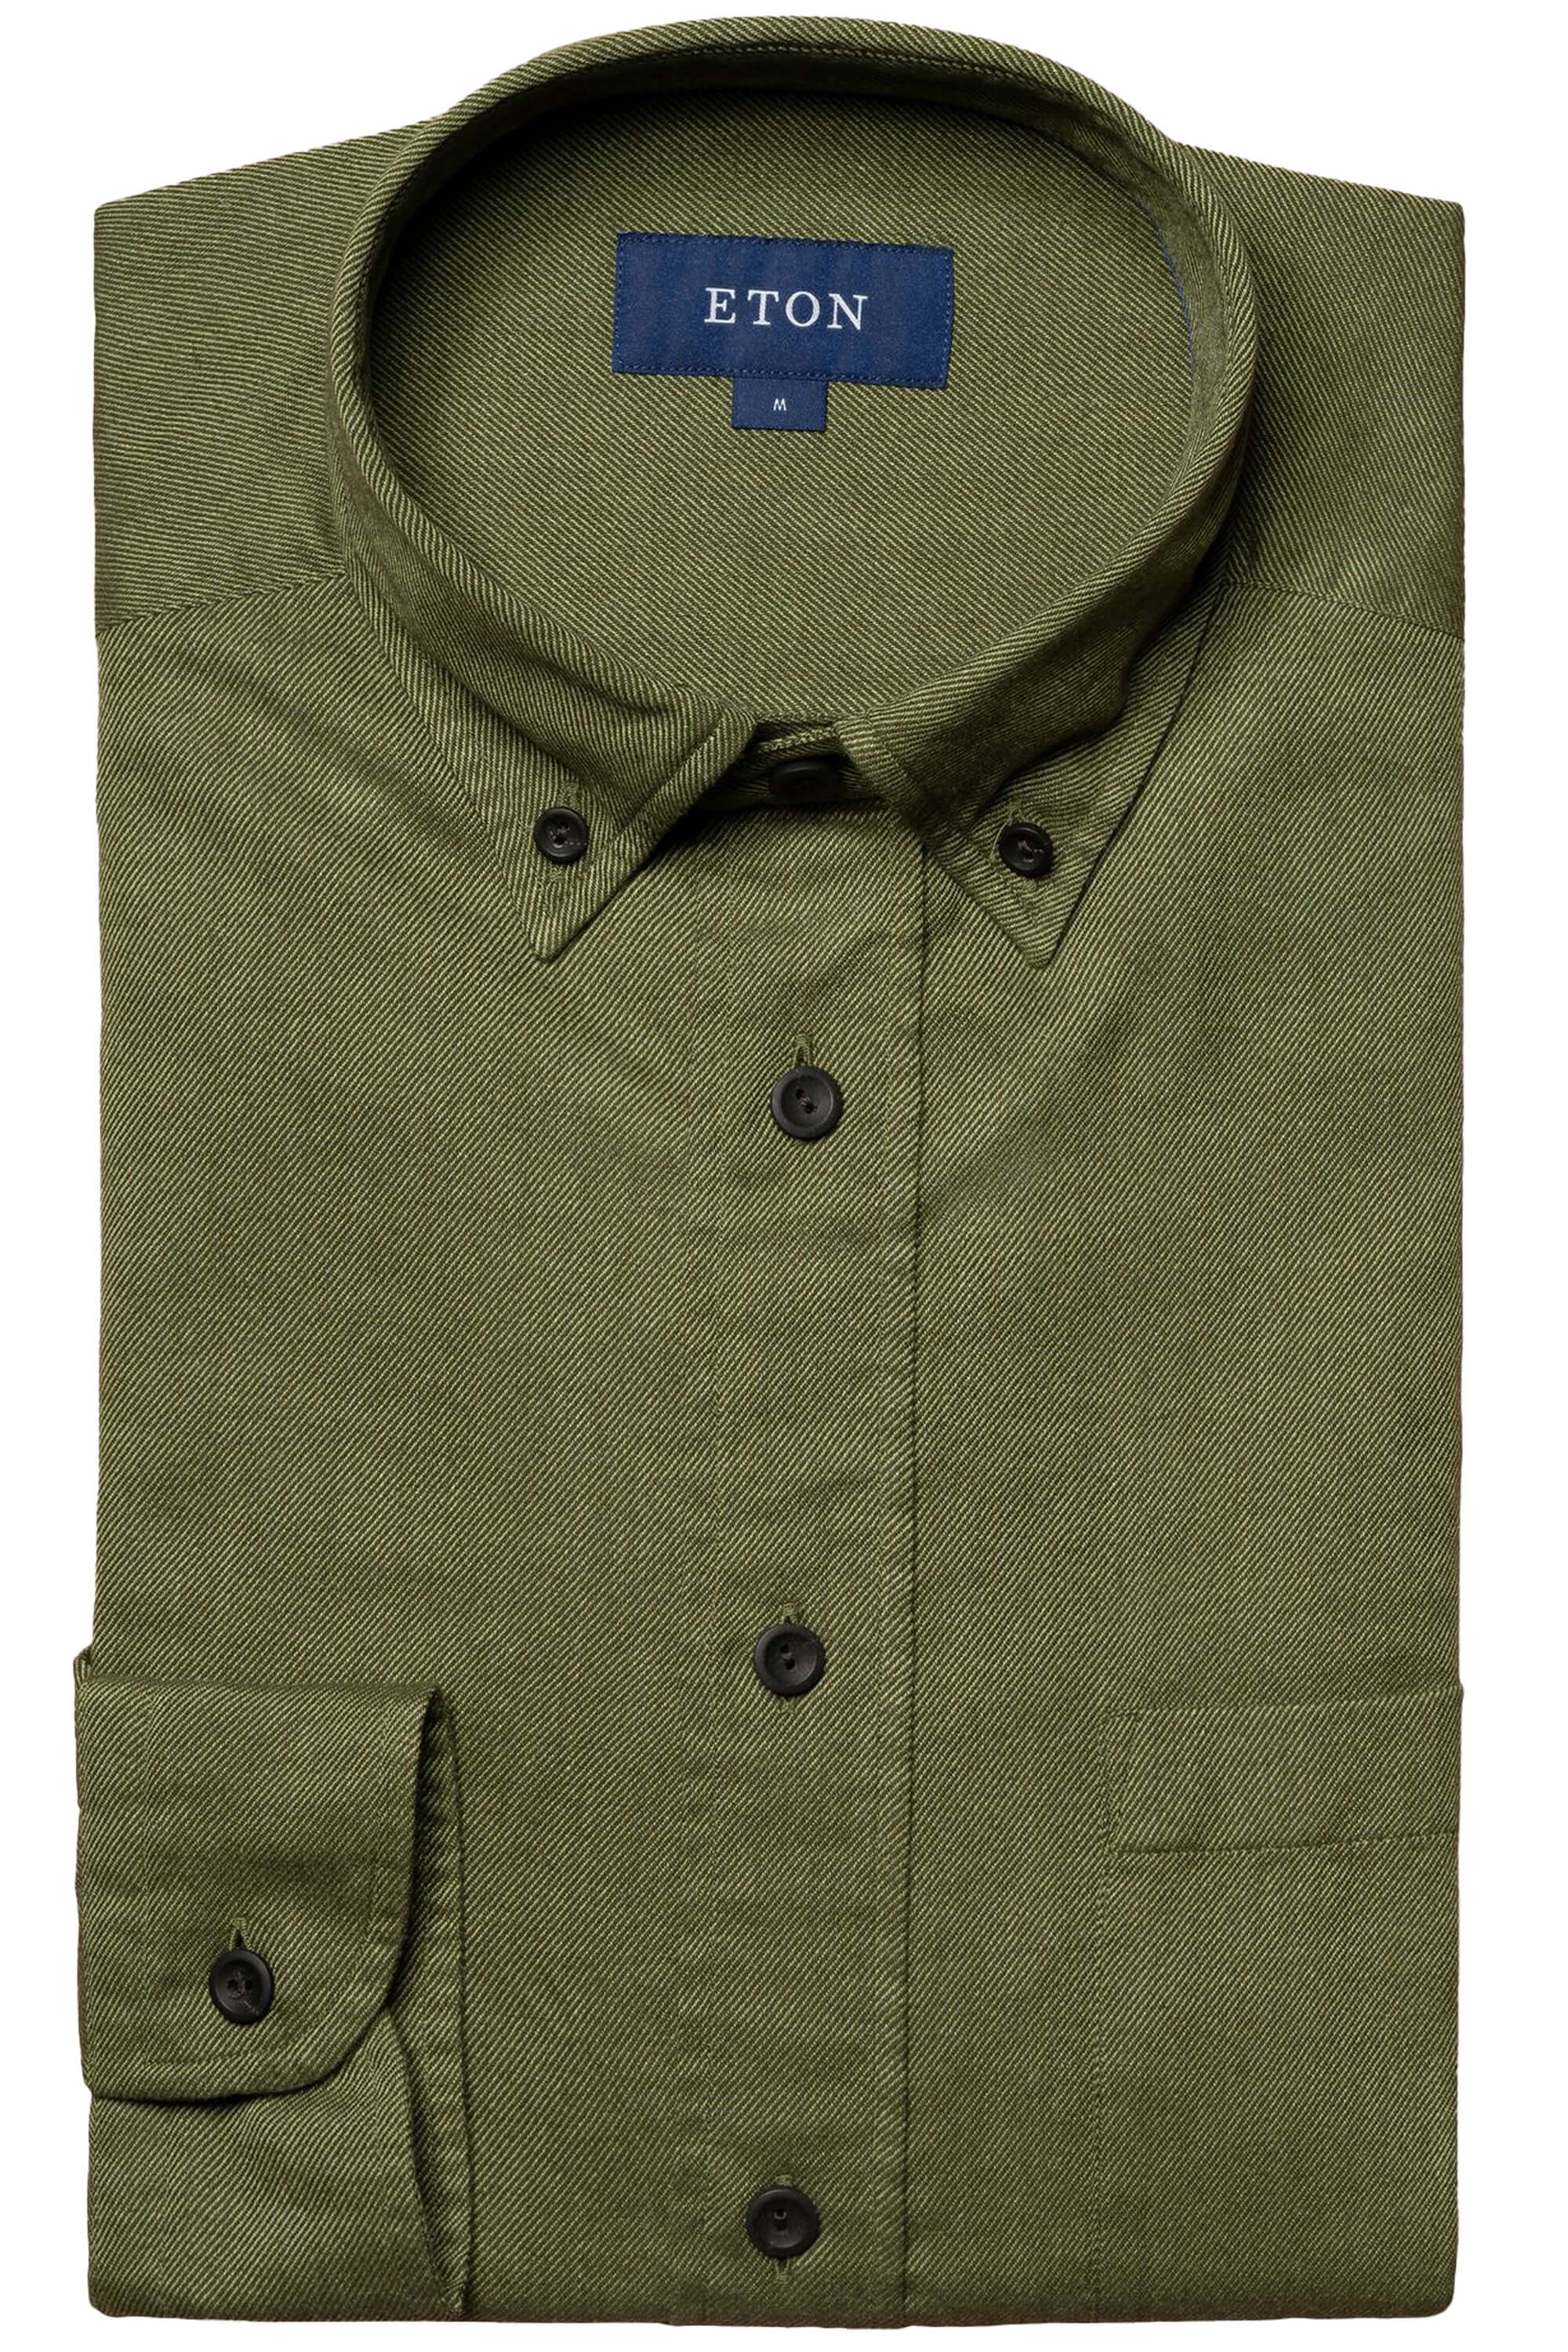 Eton Dark Green Twill Flannel Shirt